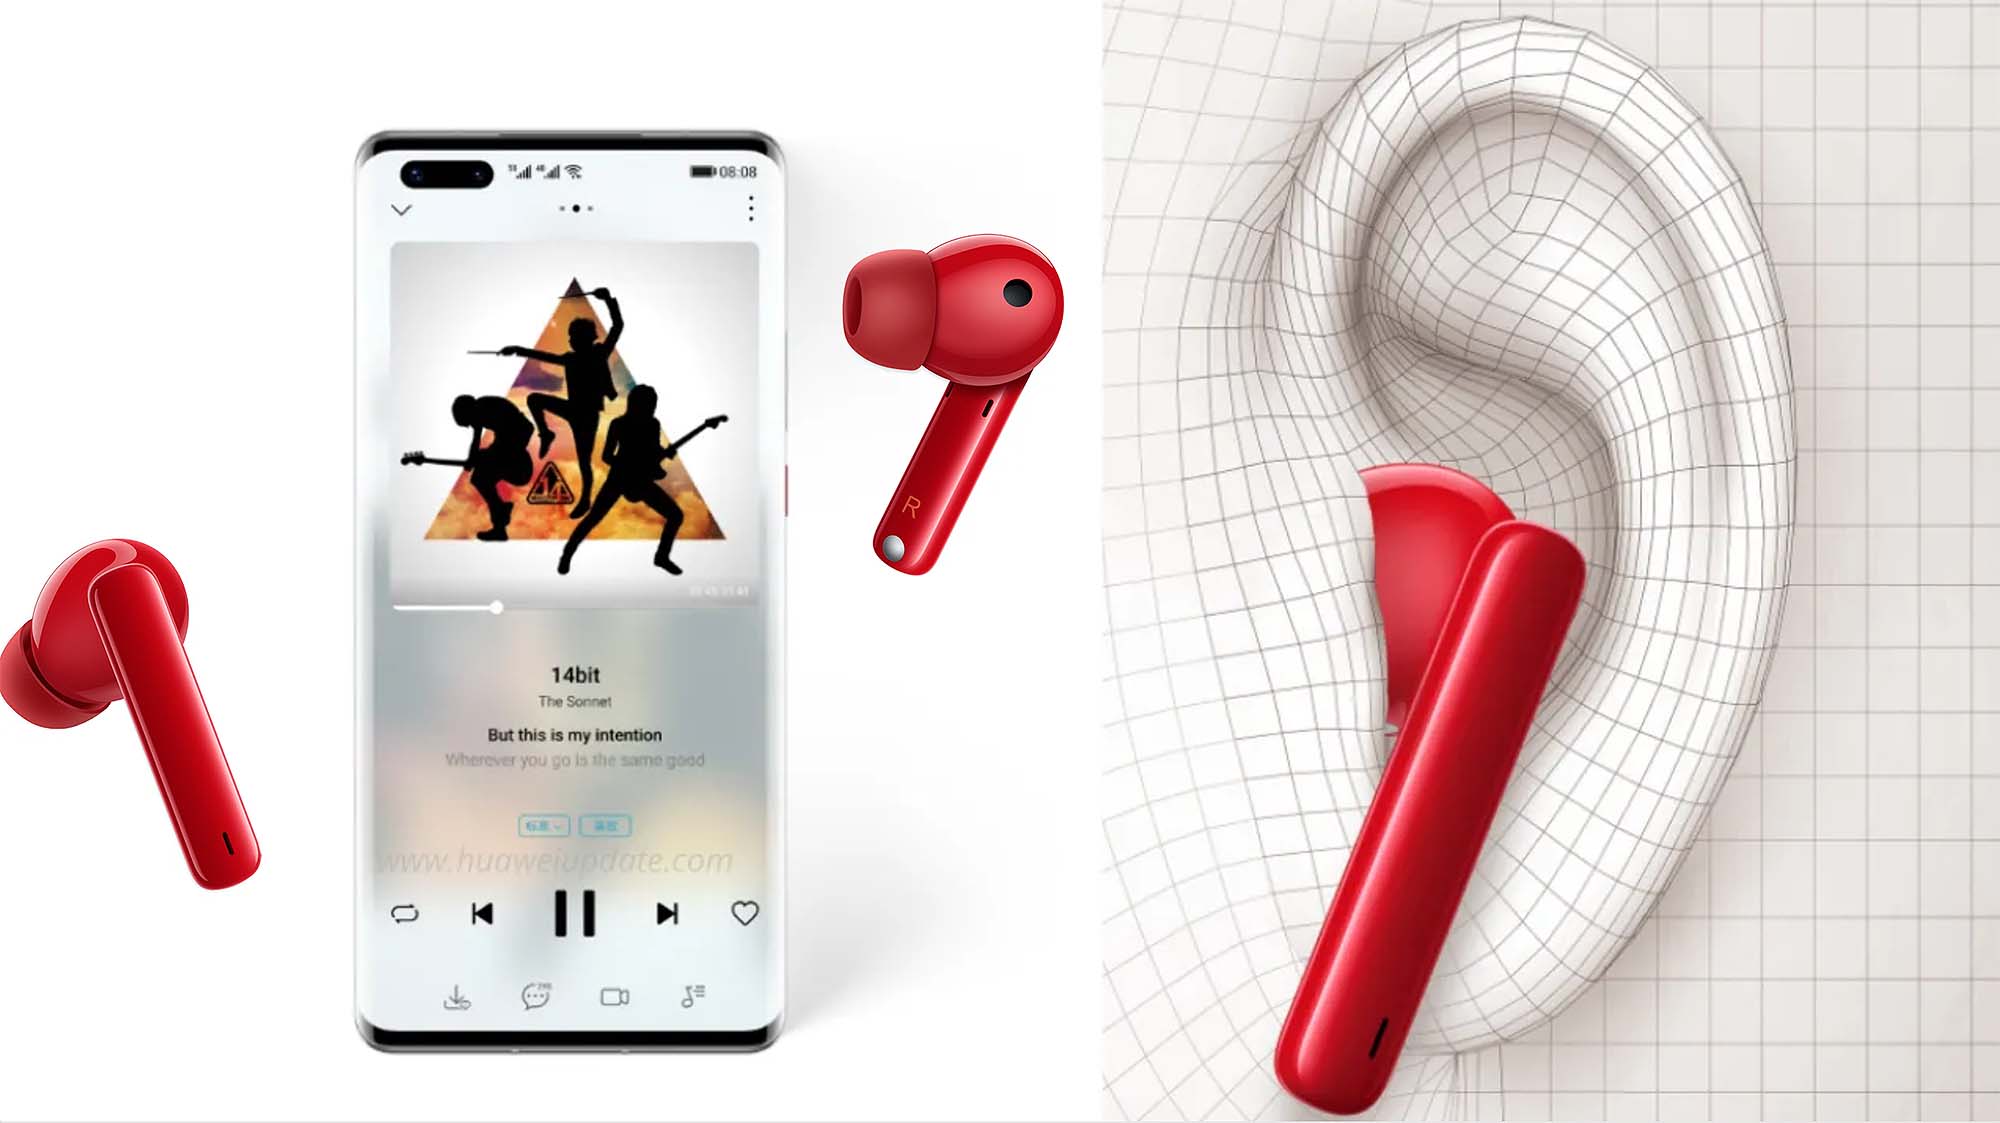 HUAWEI Freebuds 4i - Tai nghe True Wireless đáng mua nhất tầm giá dưới 2 triệu nay có thêm màu đỏ giới hạn cực chất